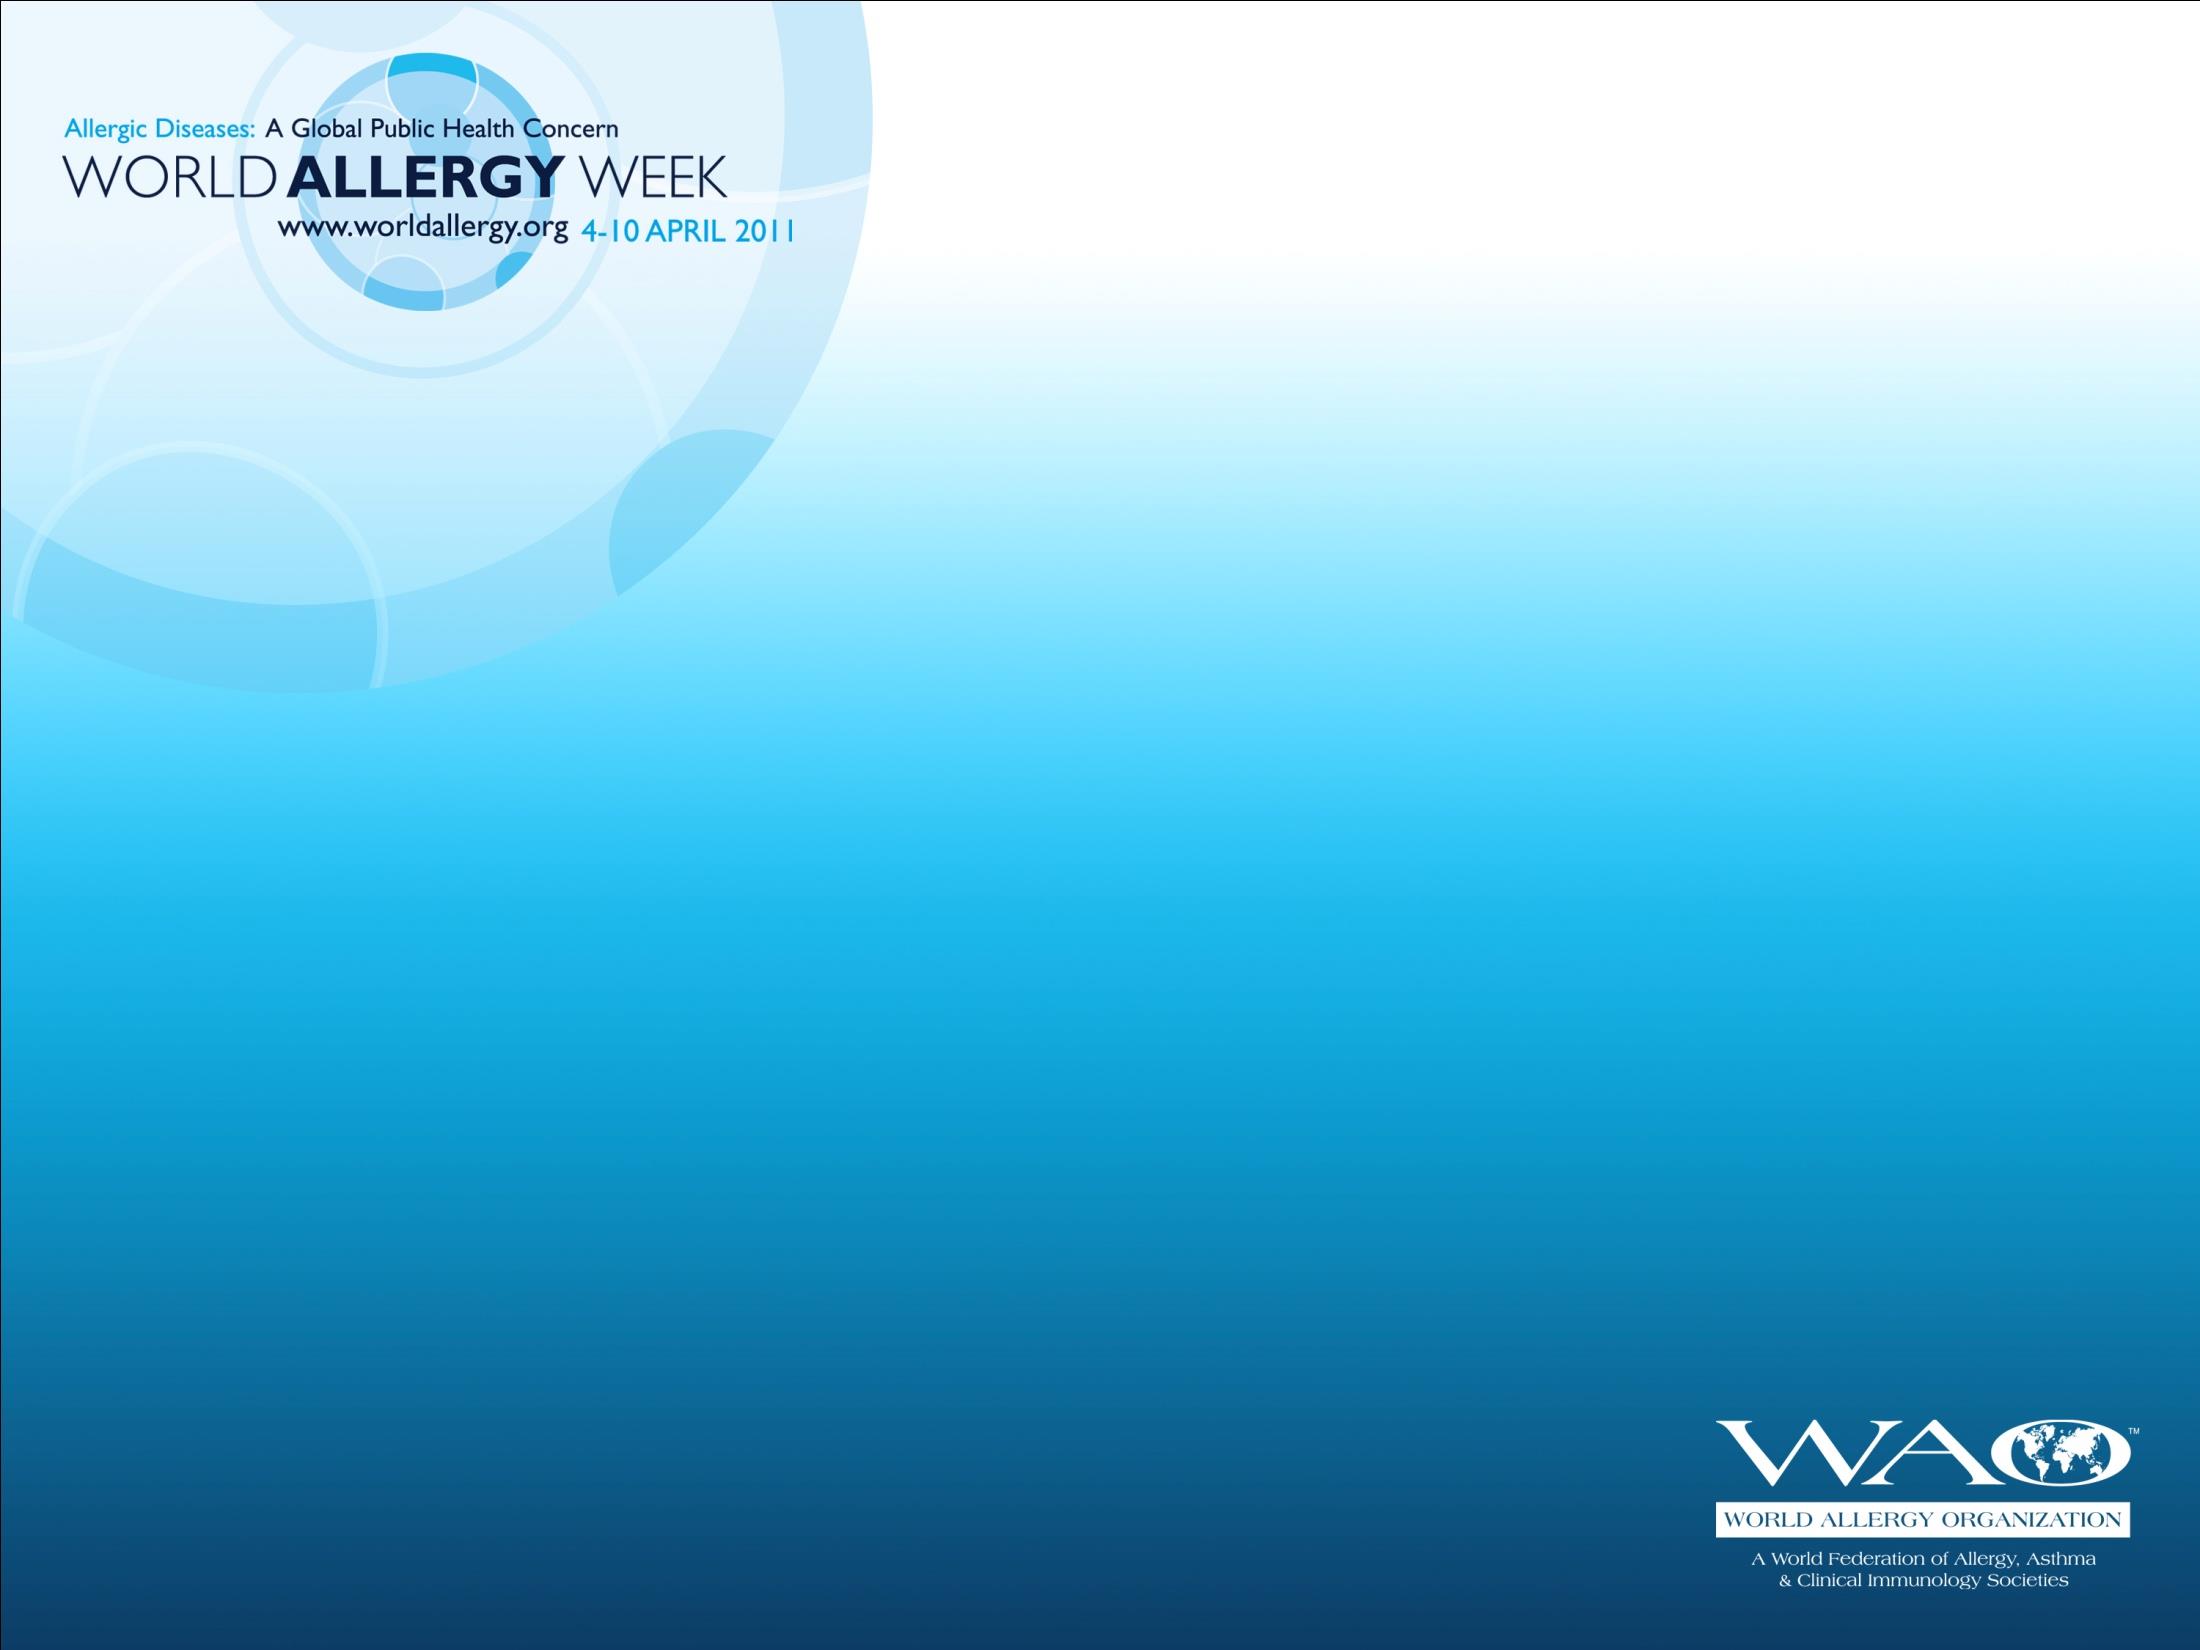 La Organización Mundial de Alergia (WAO) ha designado la semana del 4 al 10 de abril del 2011 como la Semana Mundial